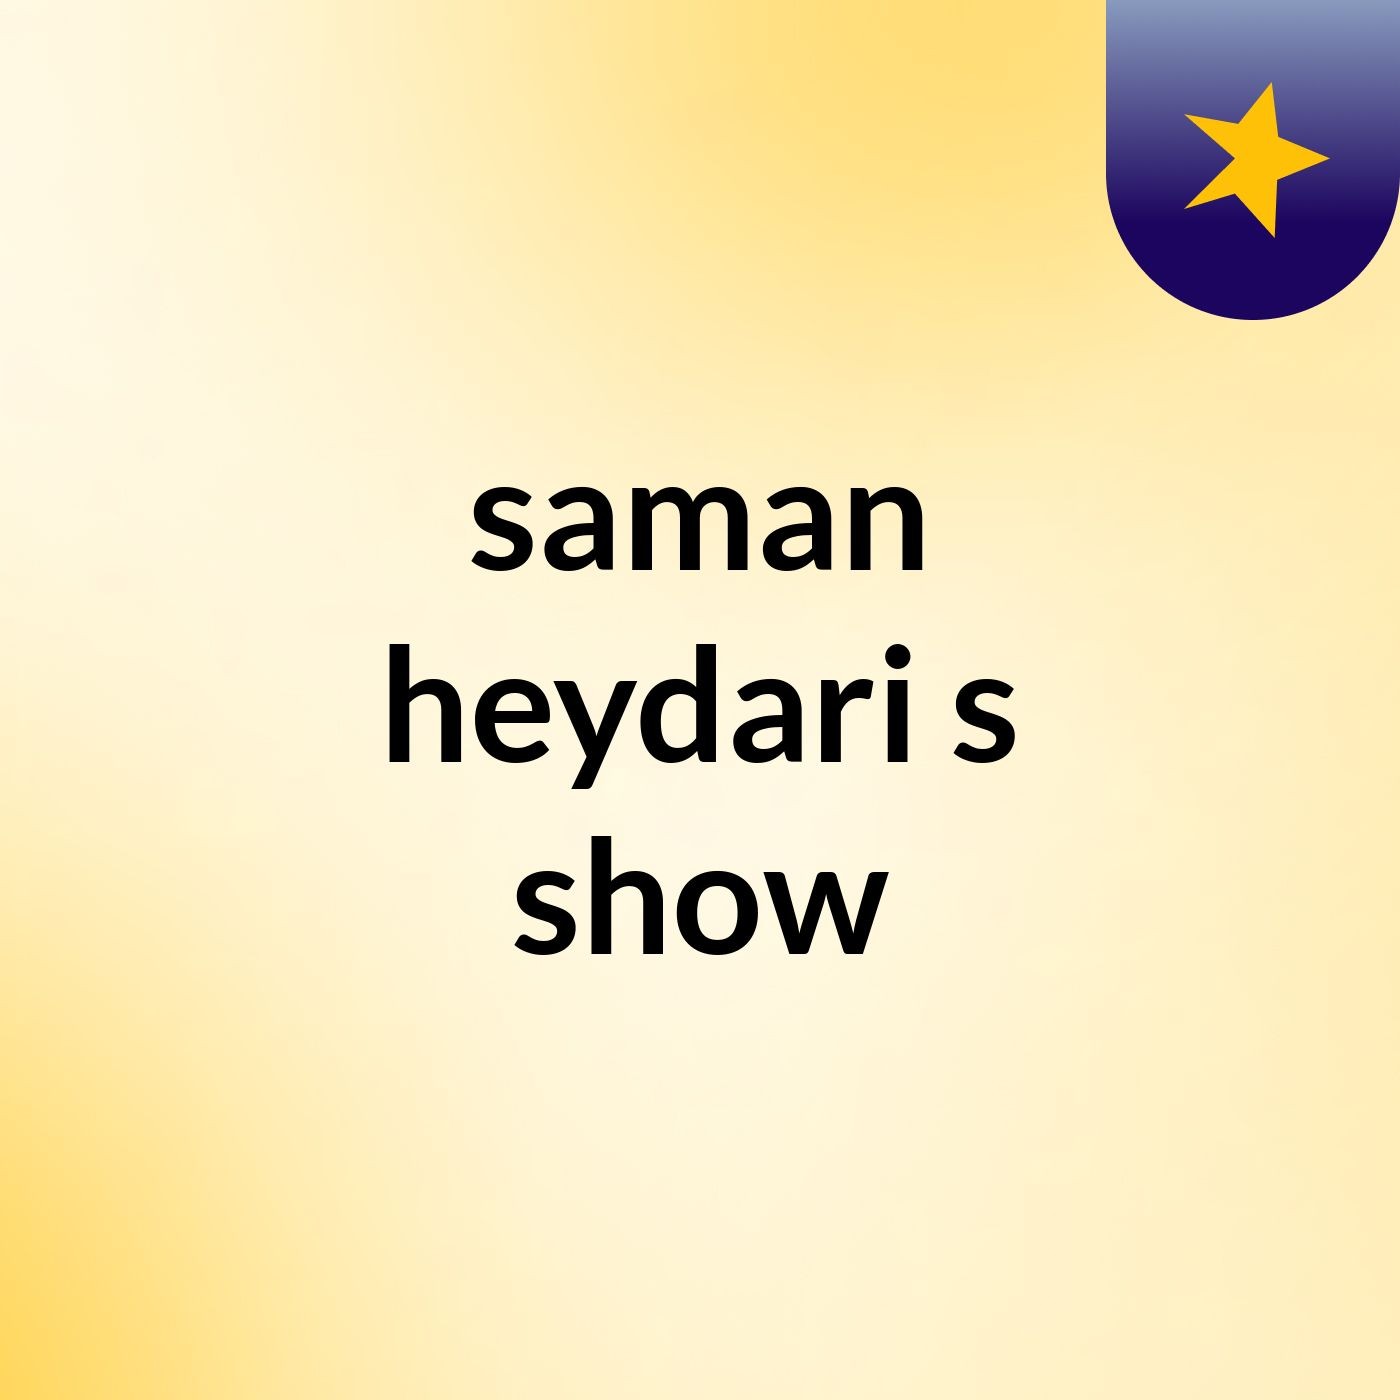 saman heydari's show